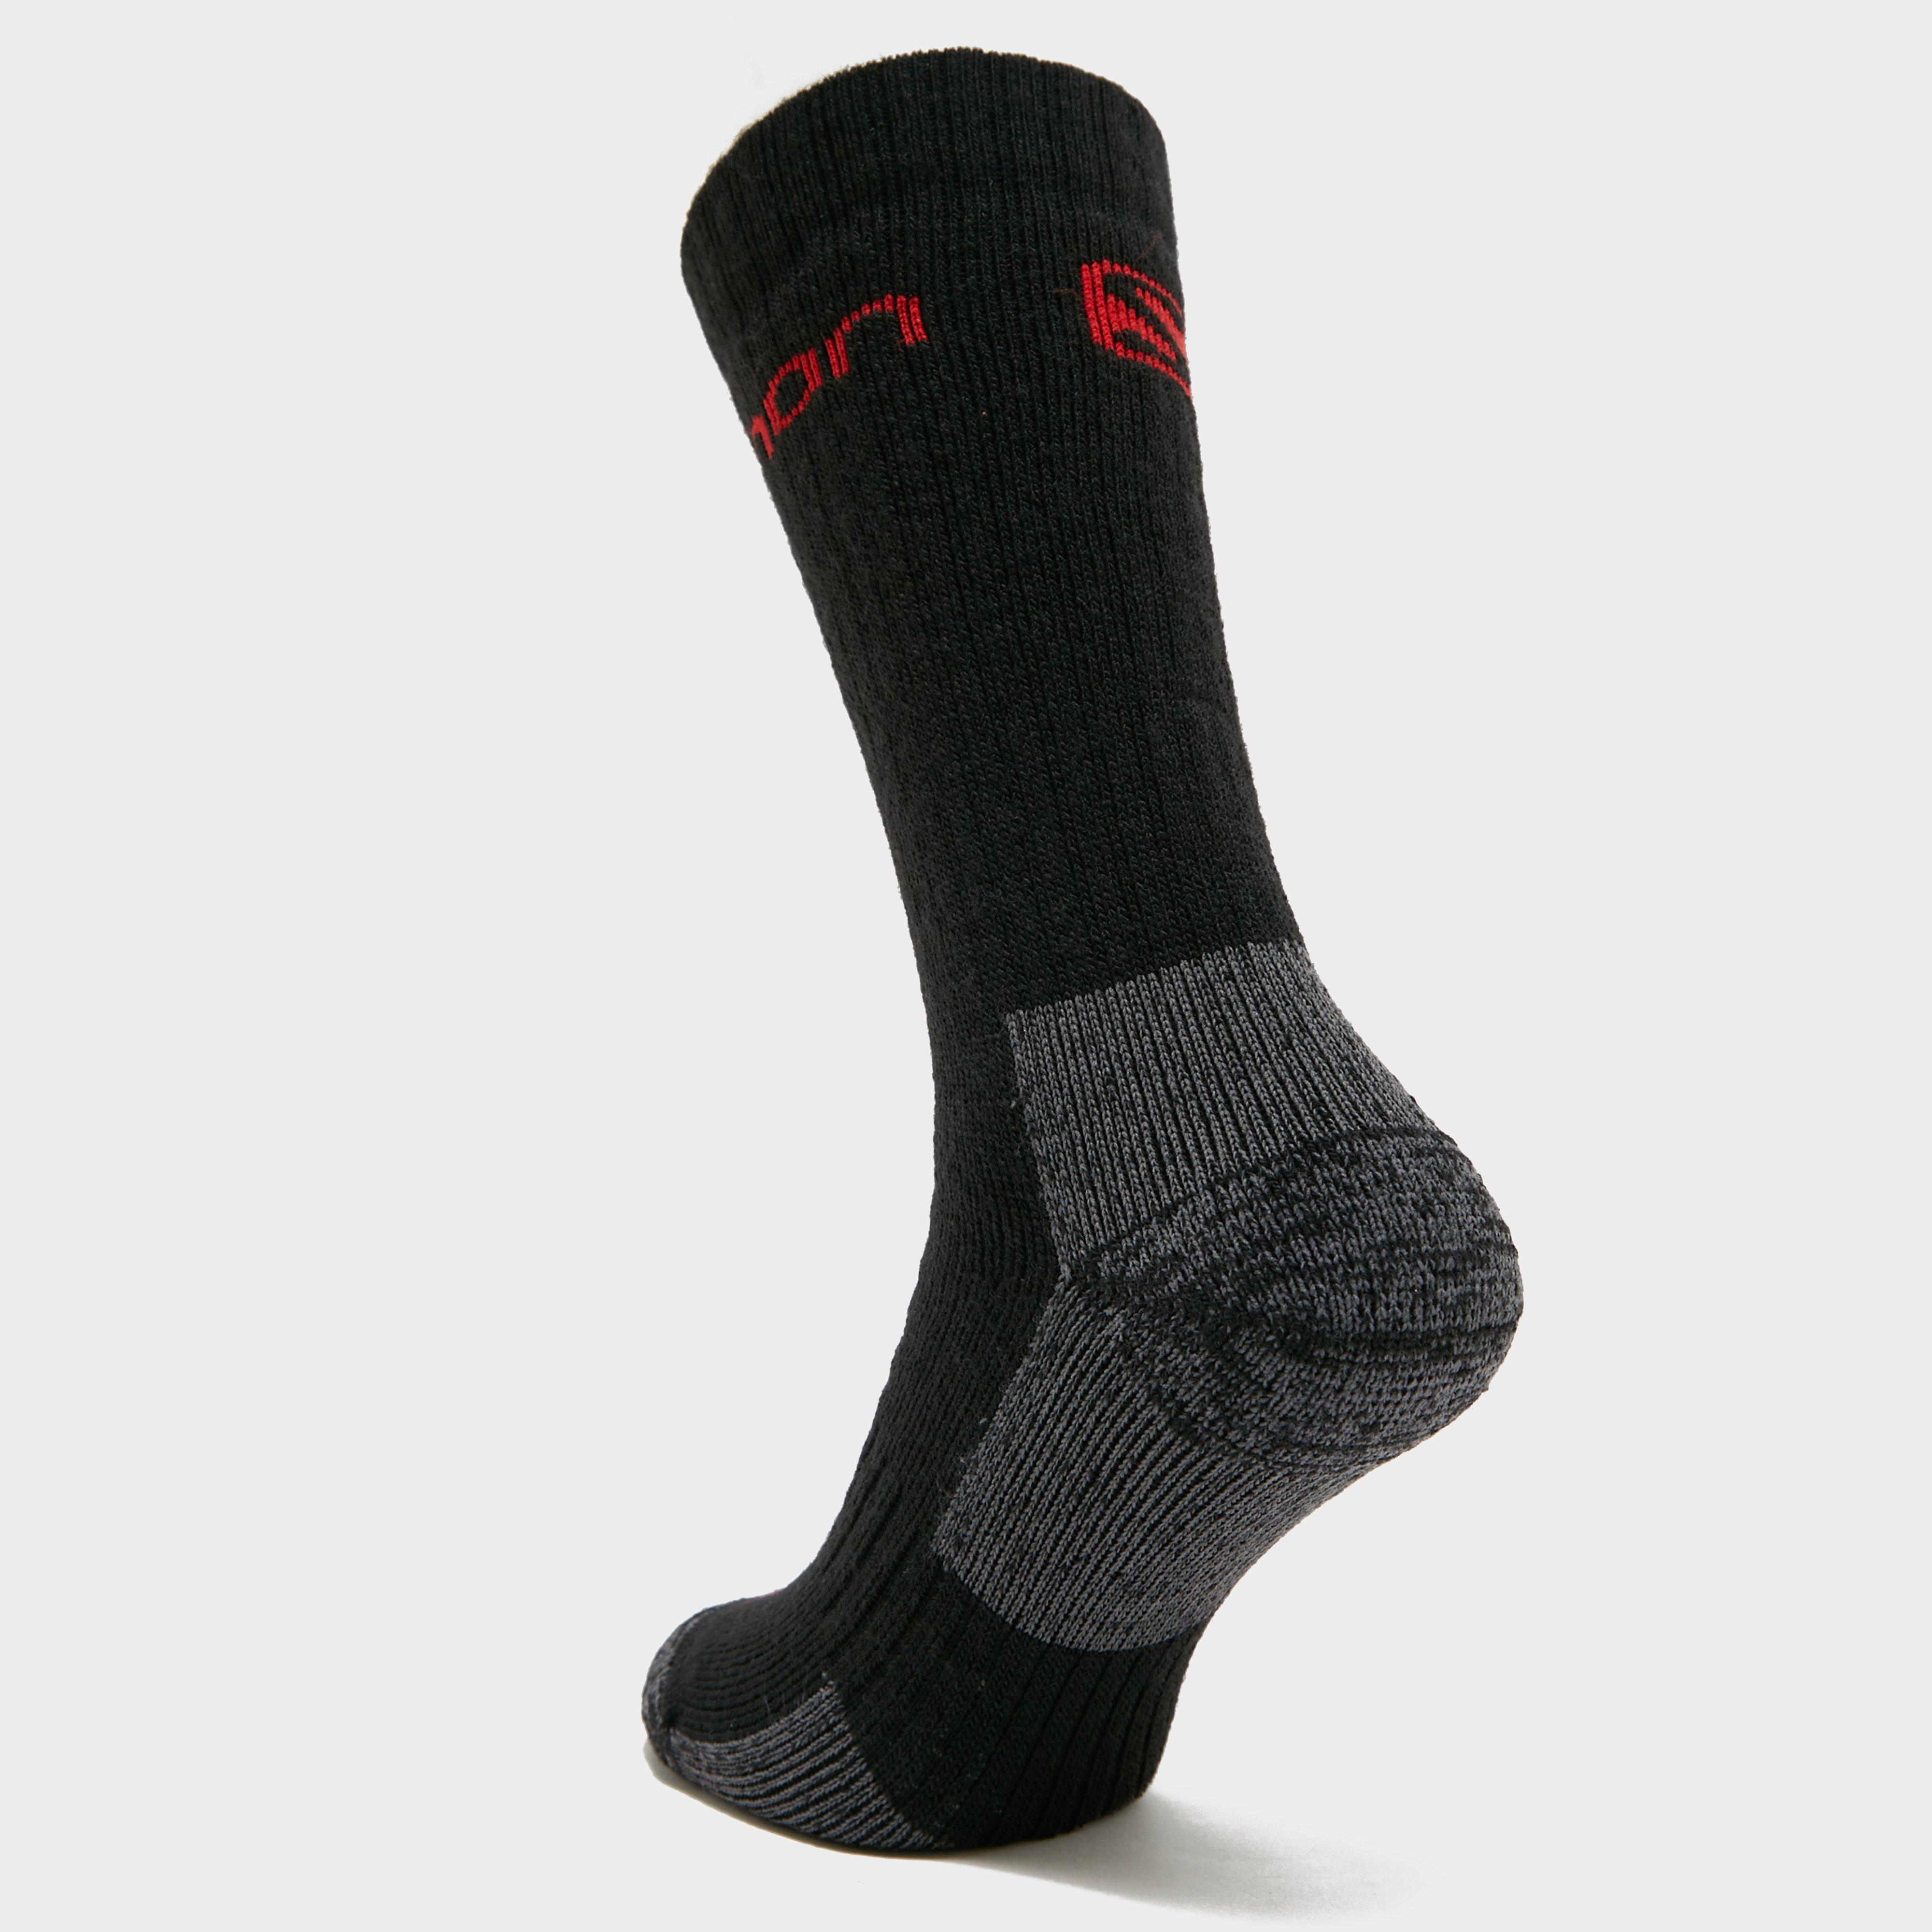 Salomon Men's Merino Socks 2 Pack Review